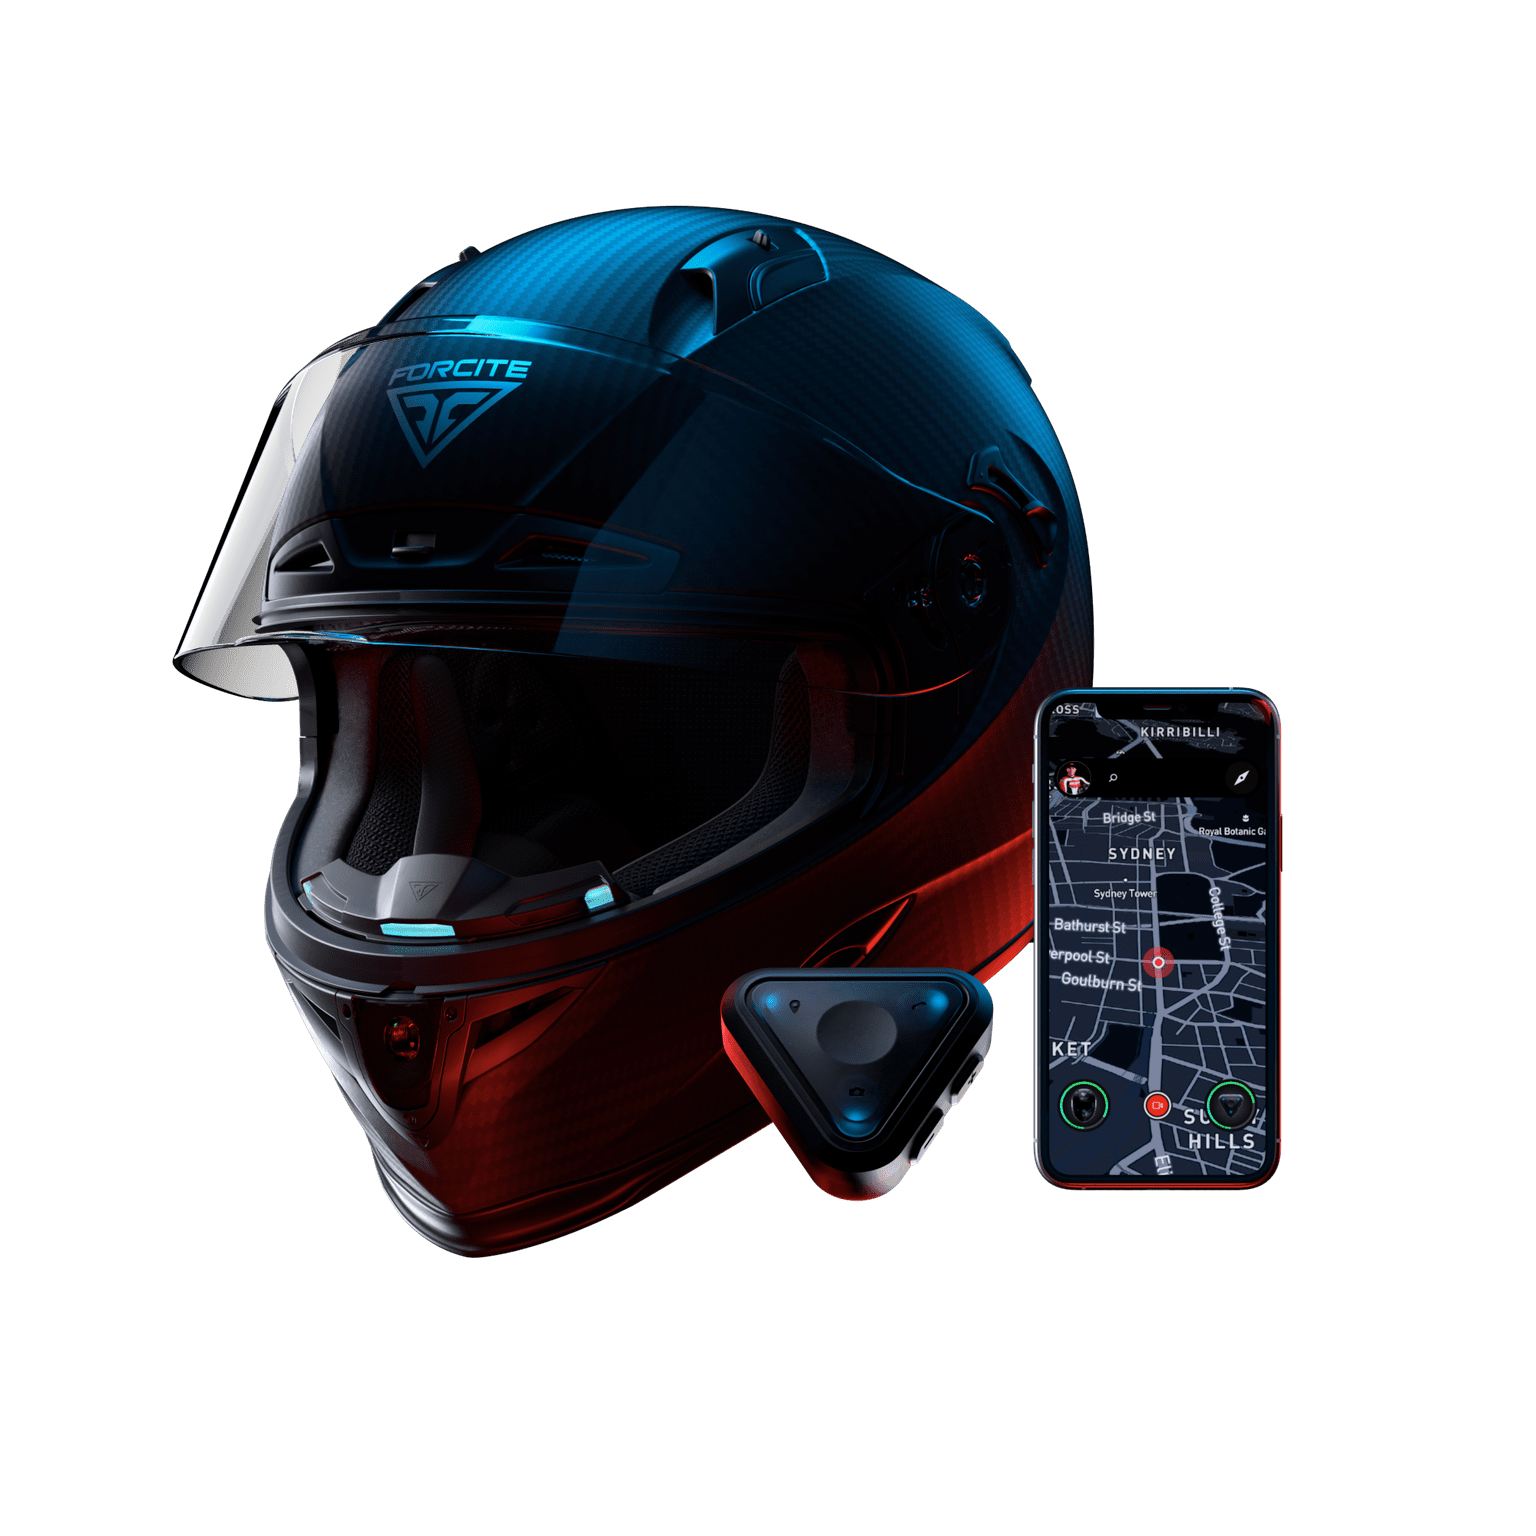 Forcite Mk1 smart helmet